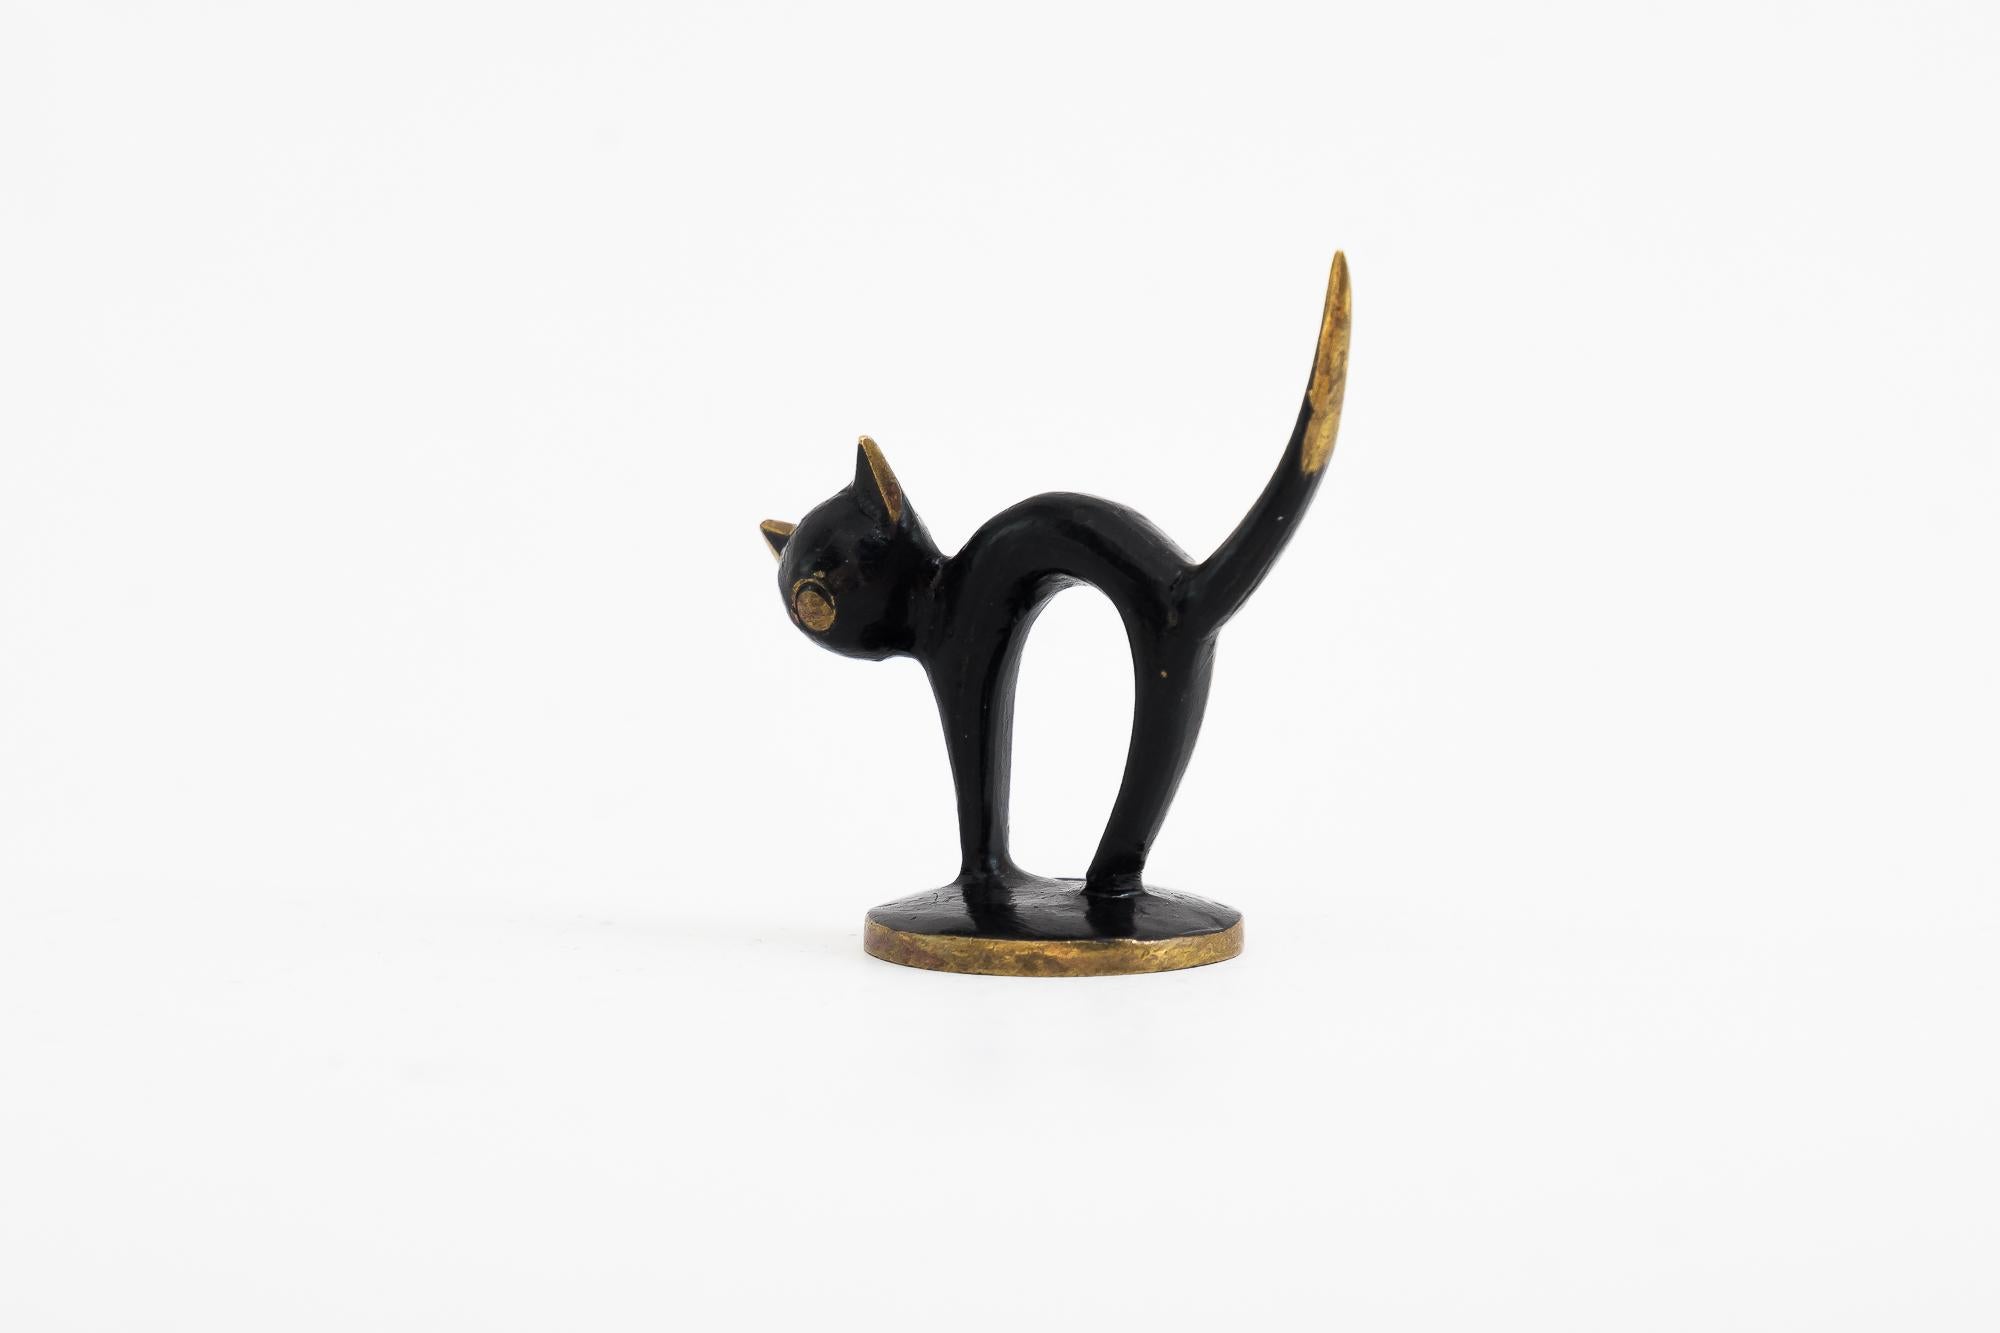 Cat figurine by Walter Bosse, Vienna, around 1950s
Original condition.